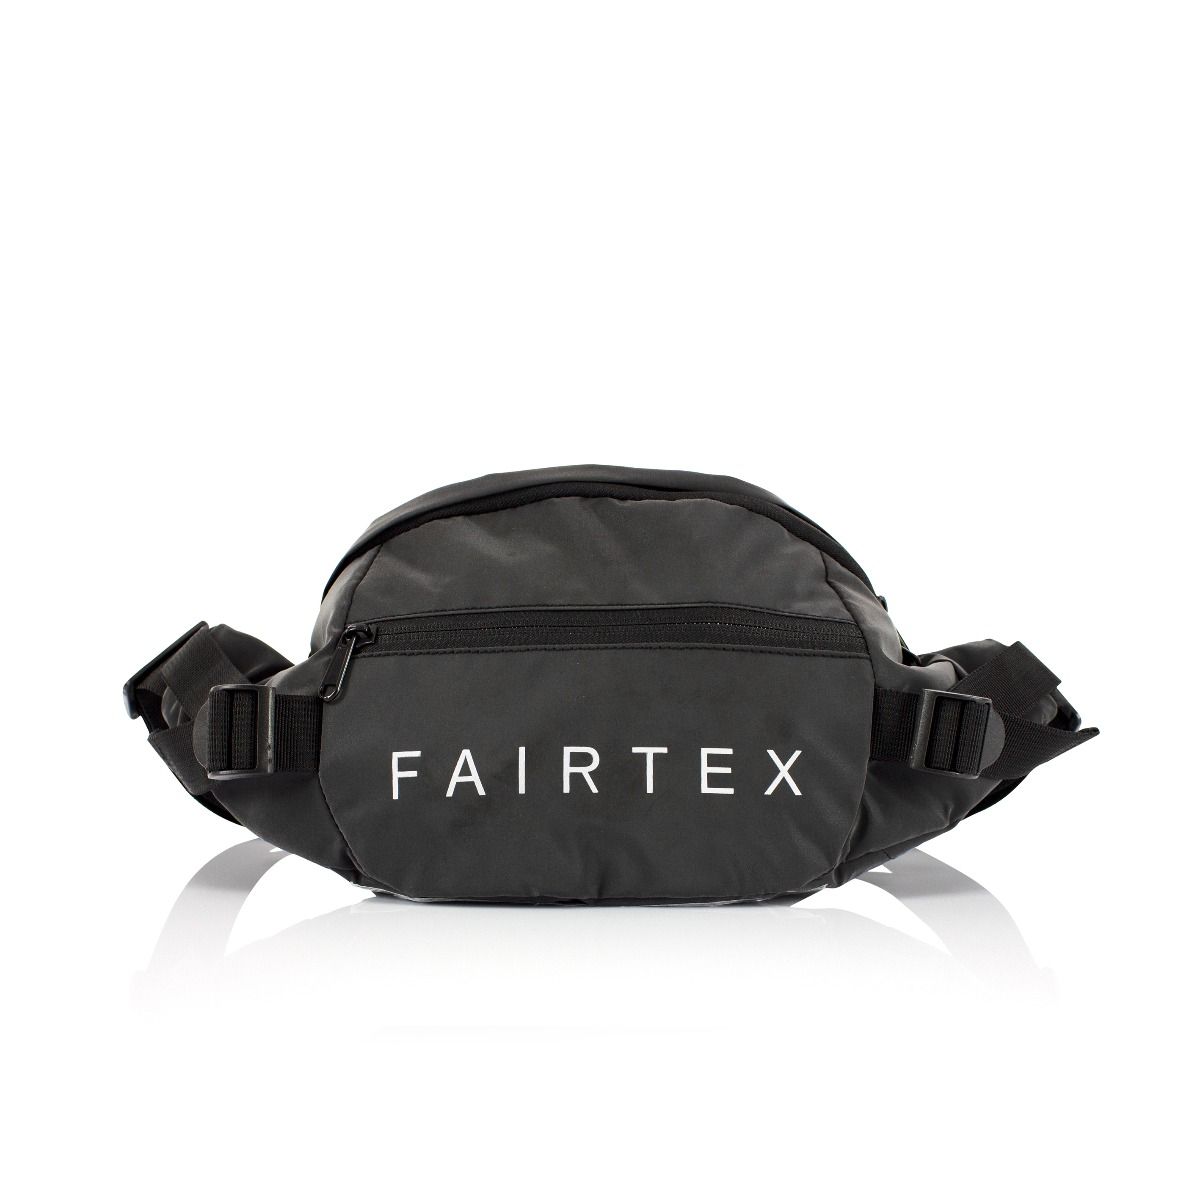 Fairtex Compact Bag 13